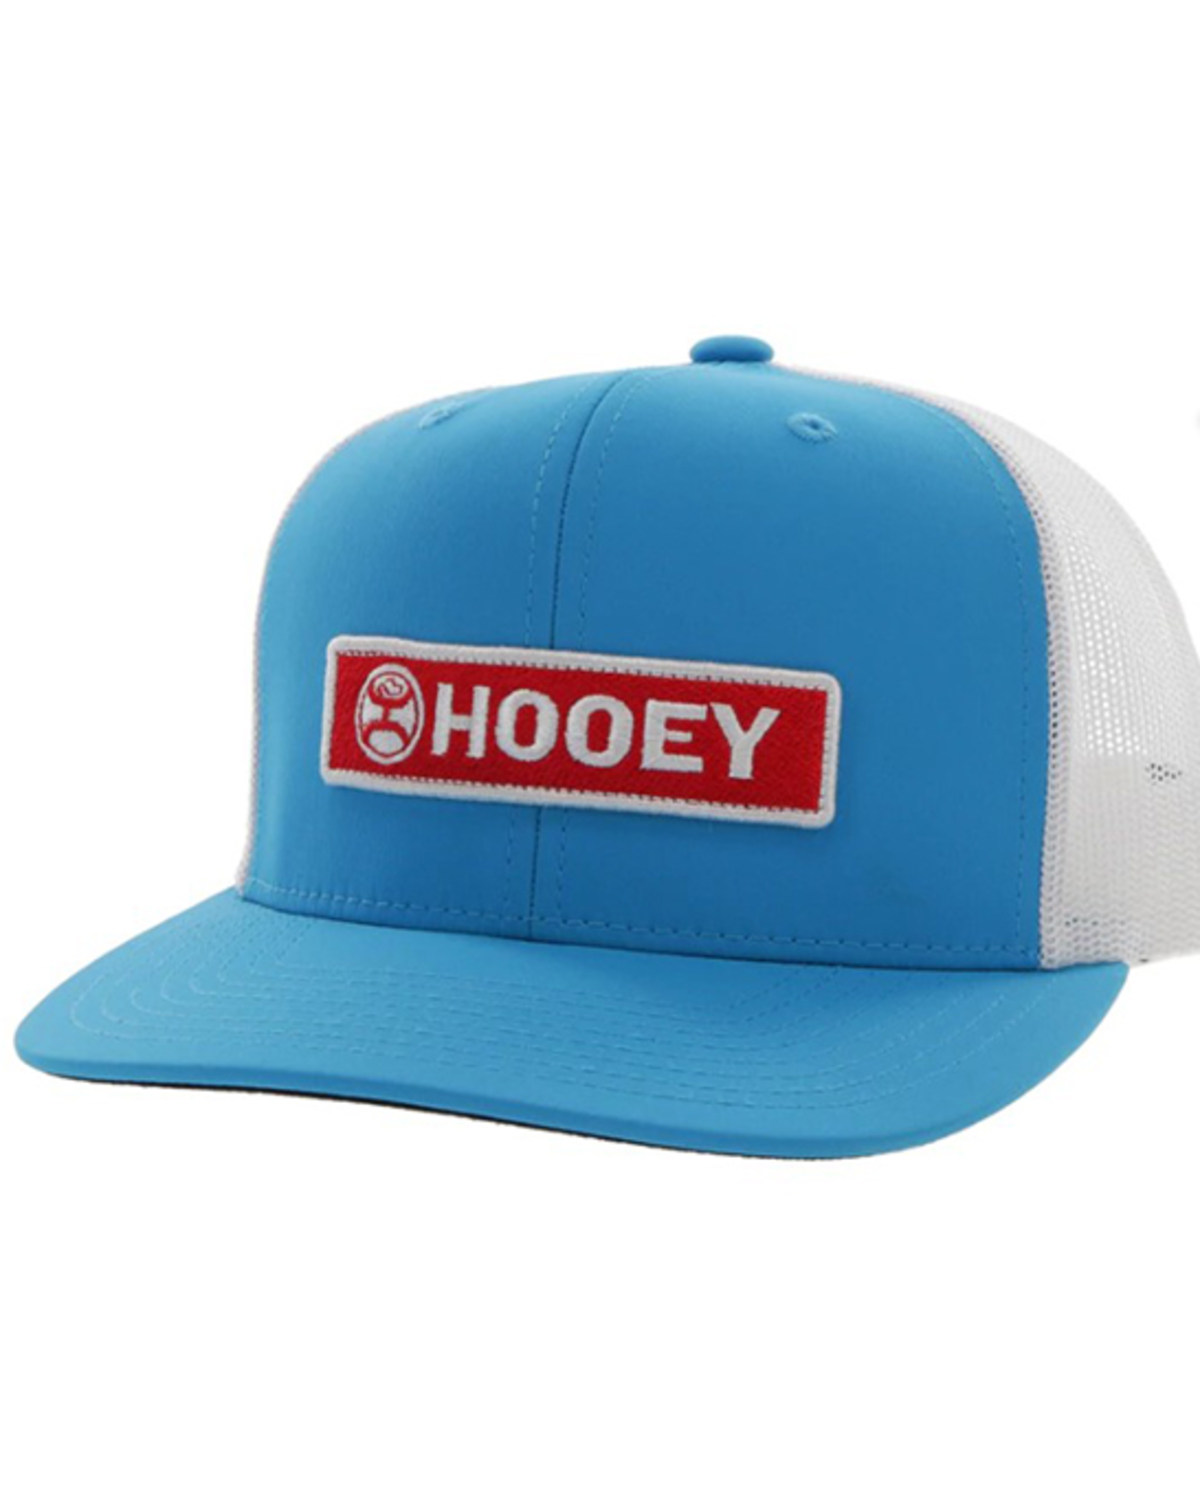 Hooey Men's Lock-Up Logo Patch Trucker Cap